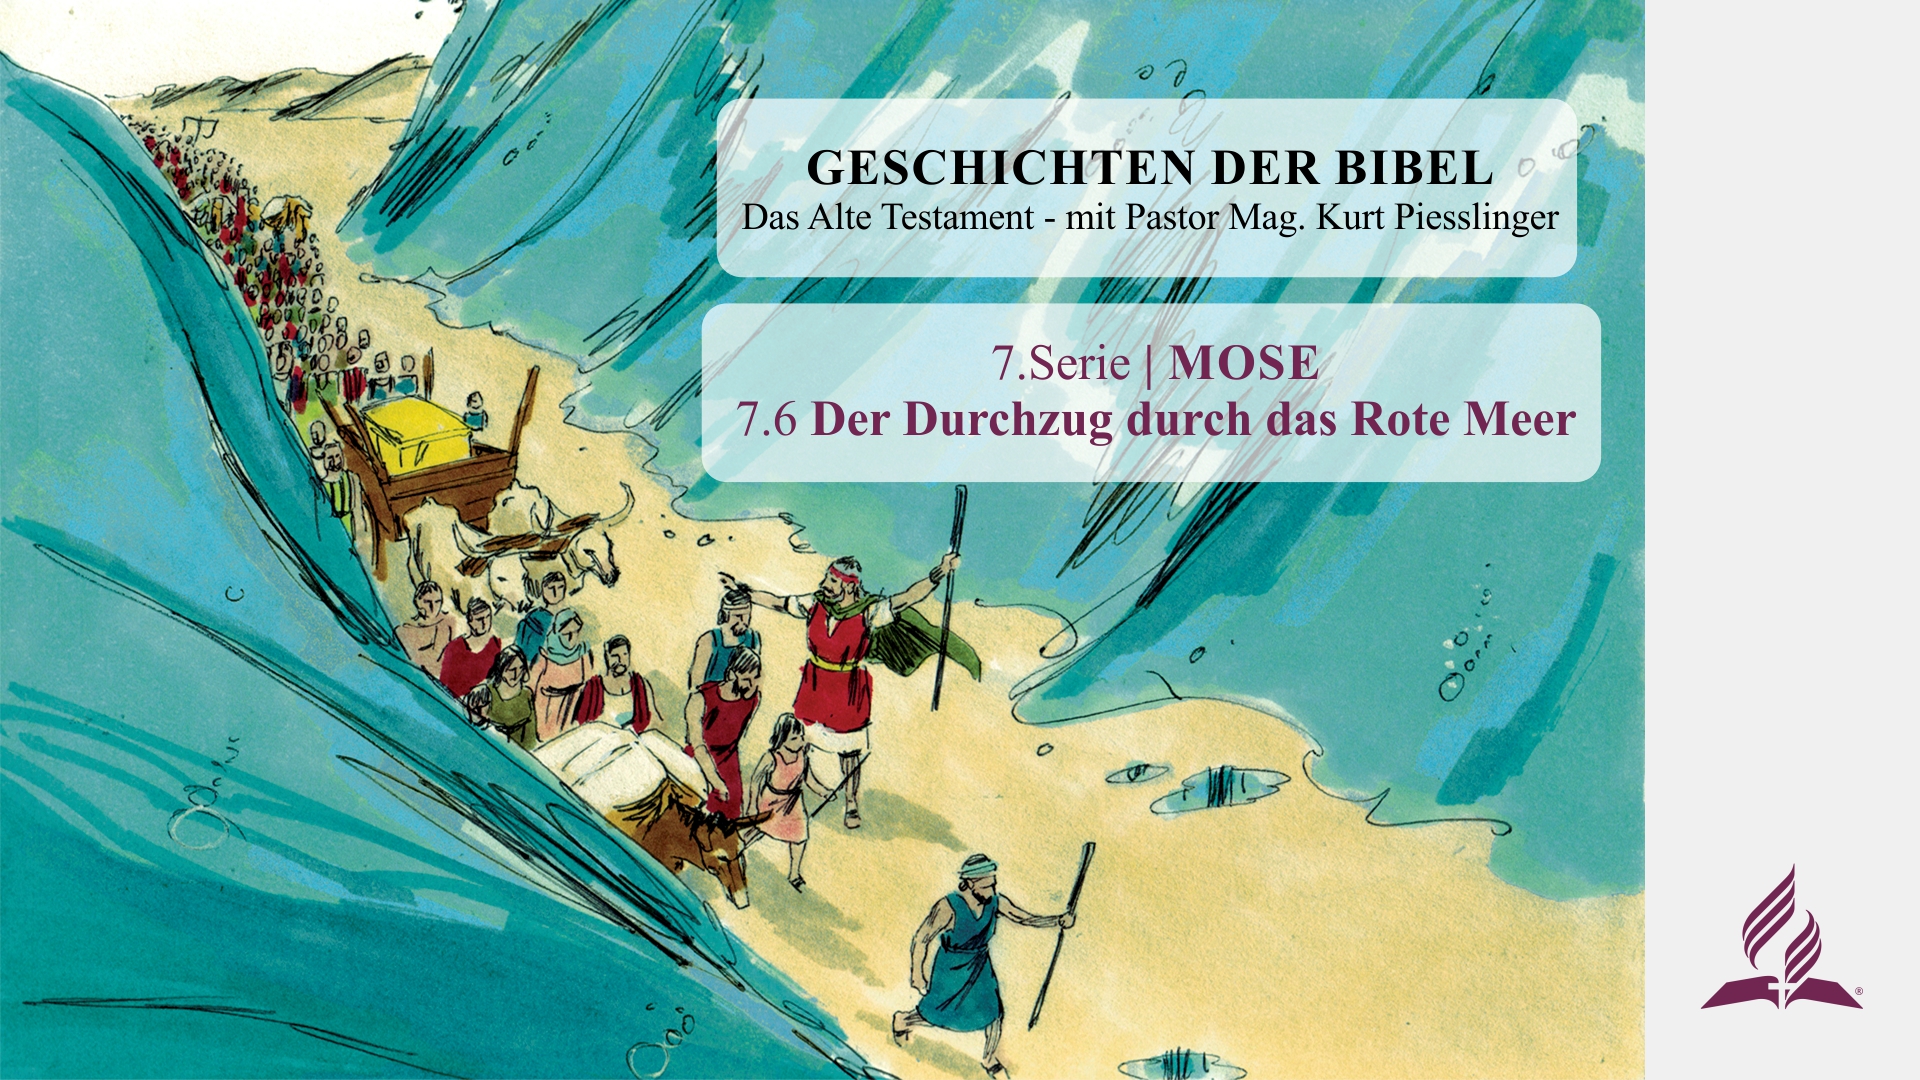 GESCHICHTEN DER BIBEL: 7.6 Der Durchzug durch das Rote Meer – 7.MOSE | Pastor Mag. Kurt Piesslinger